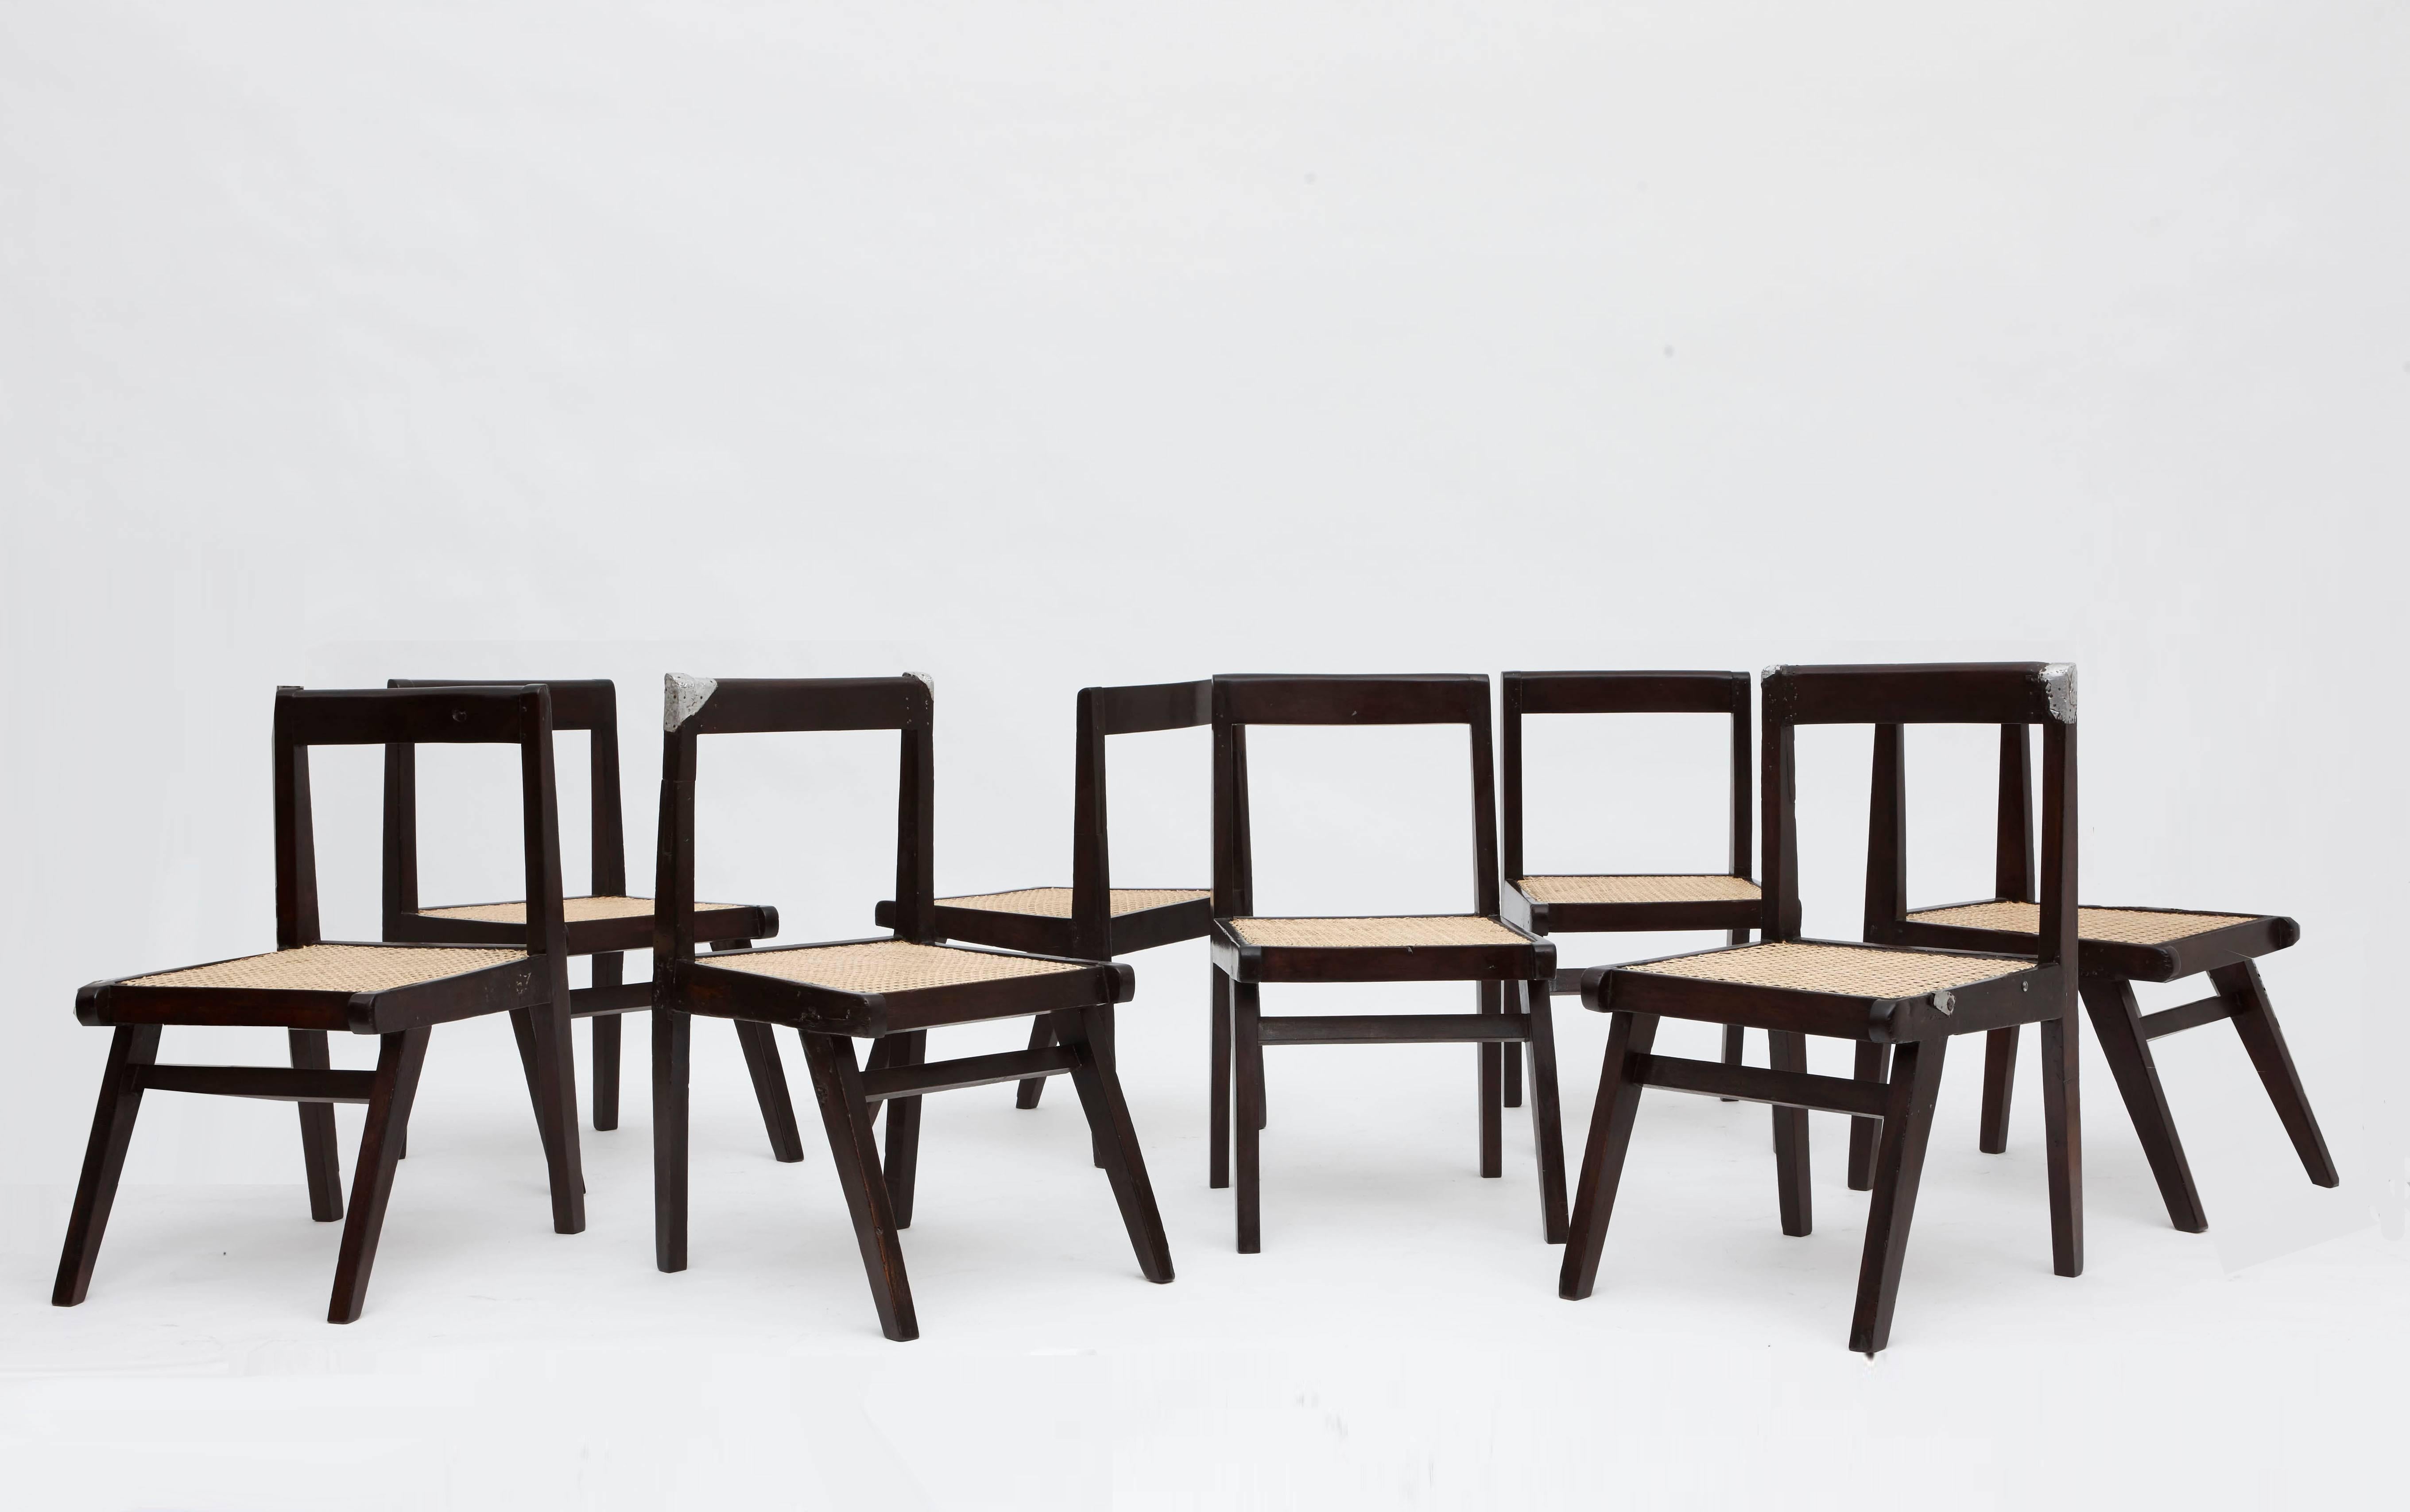 Pierre Jeanneret - Ensemble de 8 chaises démontables, circa 1955-56
Teck